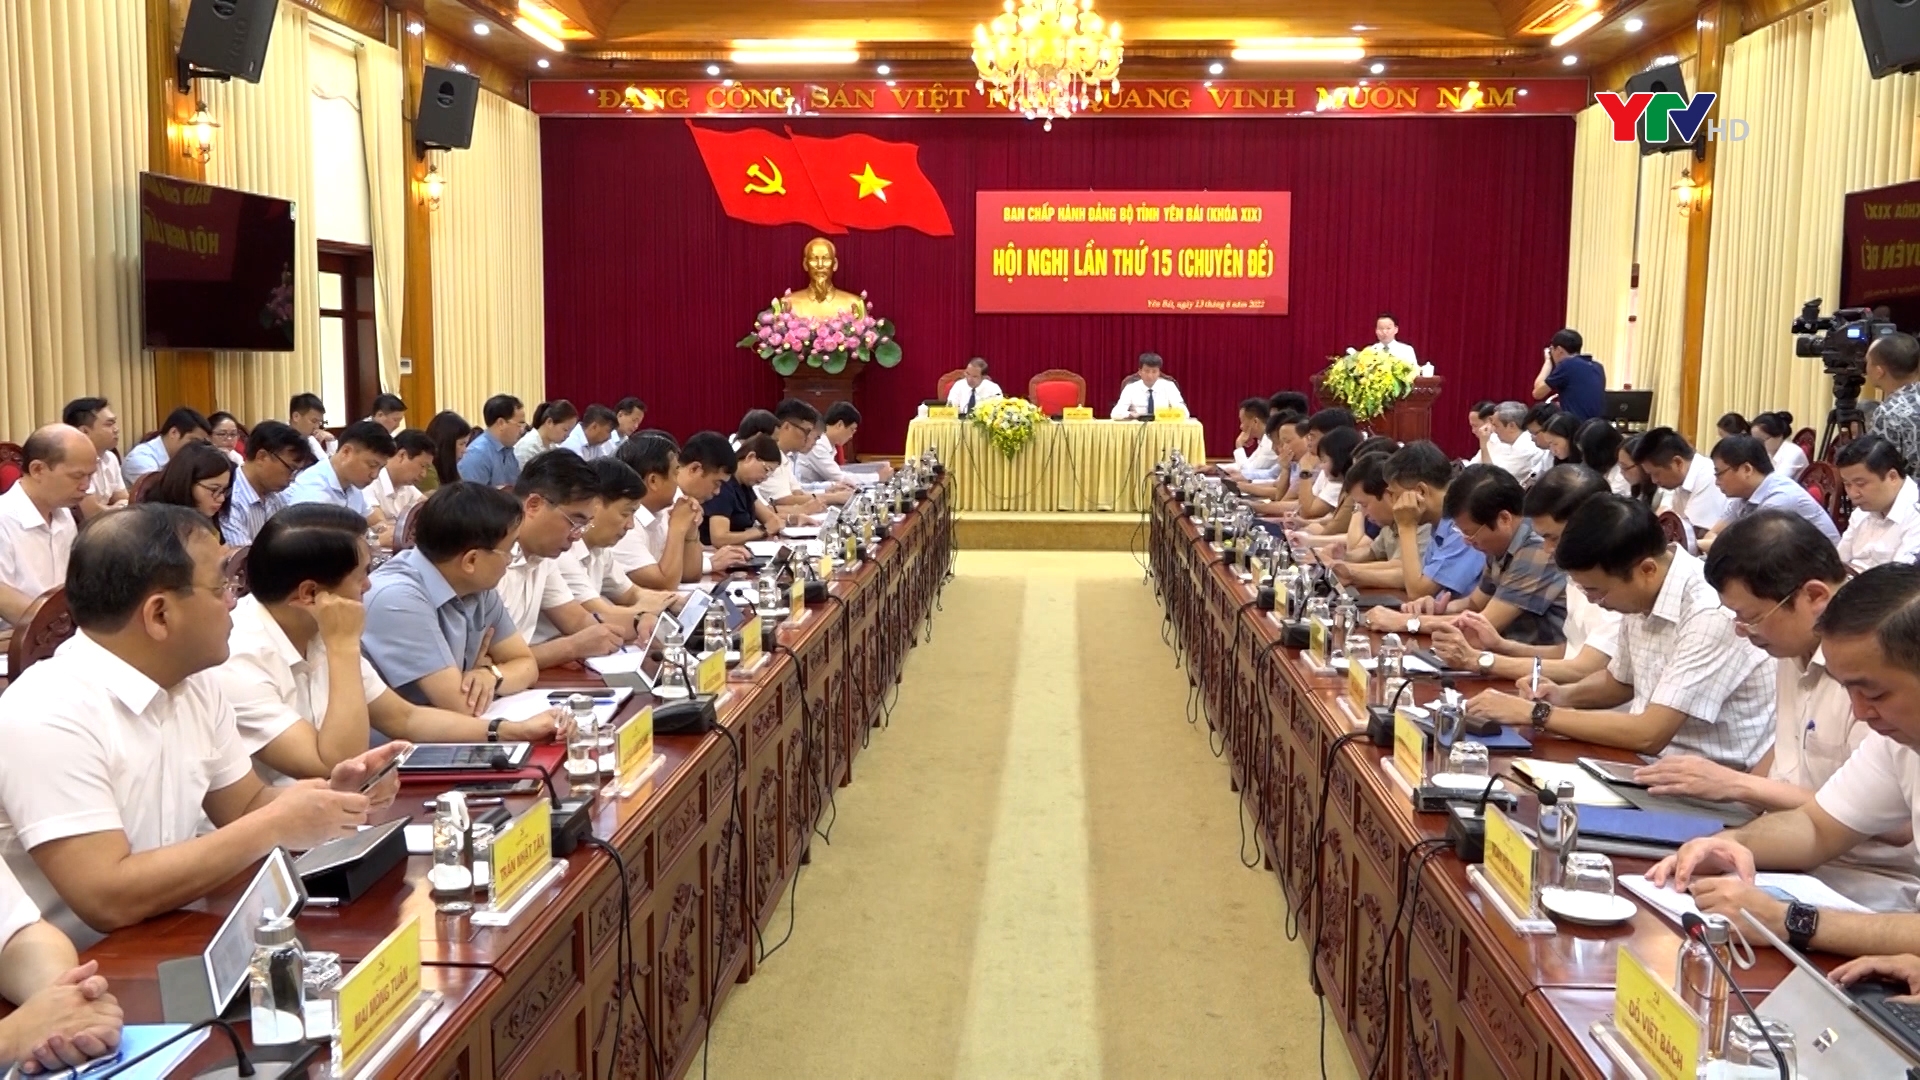 Hội nghị BCH Đảng bộ tỉnh Yên Bái lần thứ 15 (Chuyên đề)